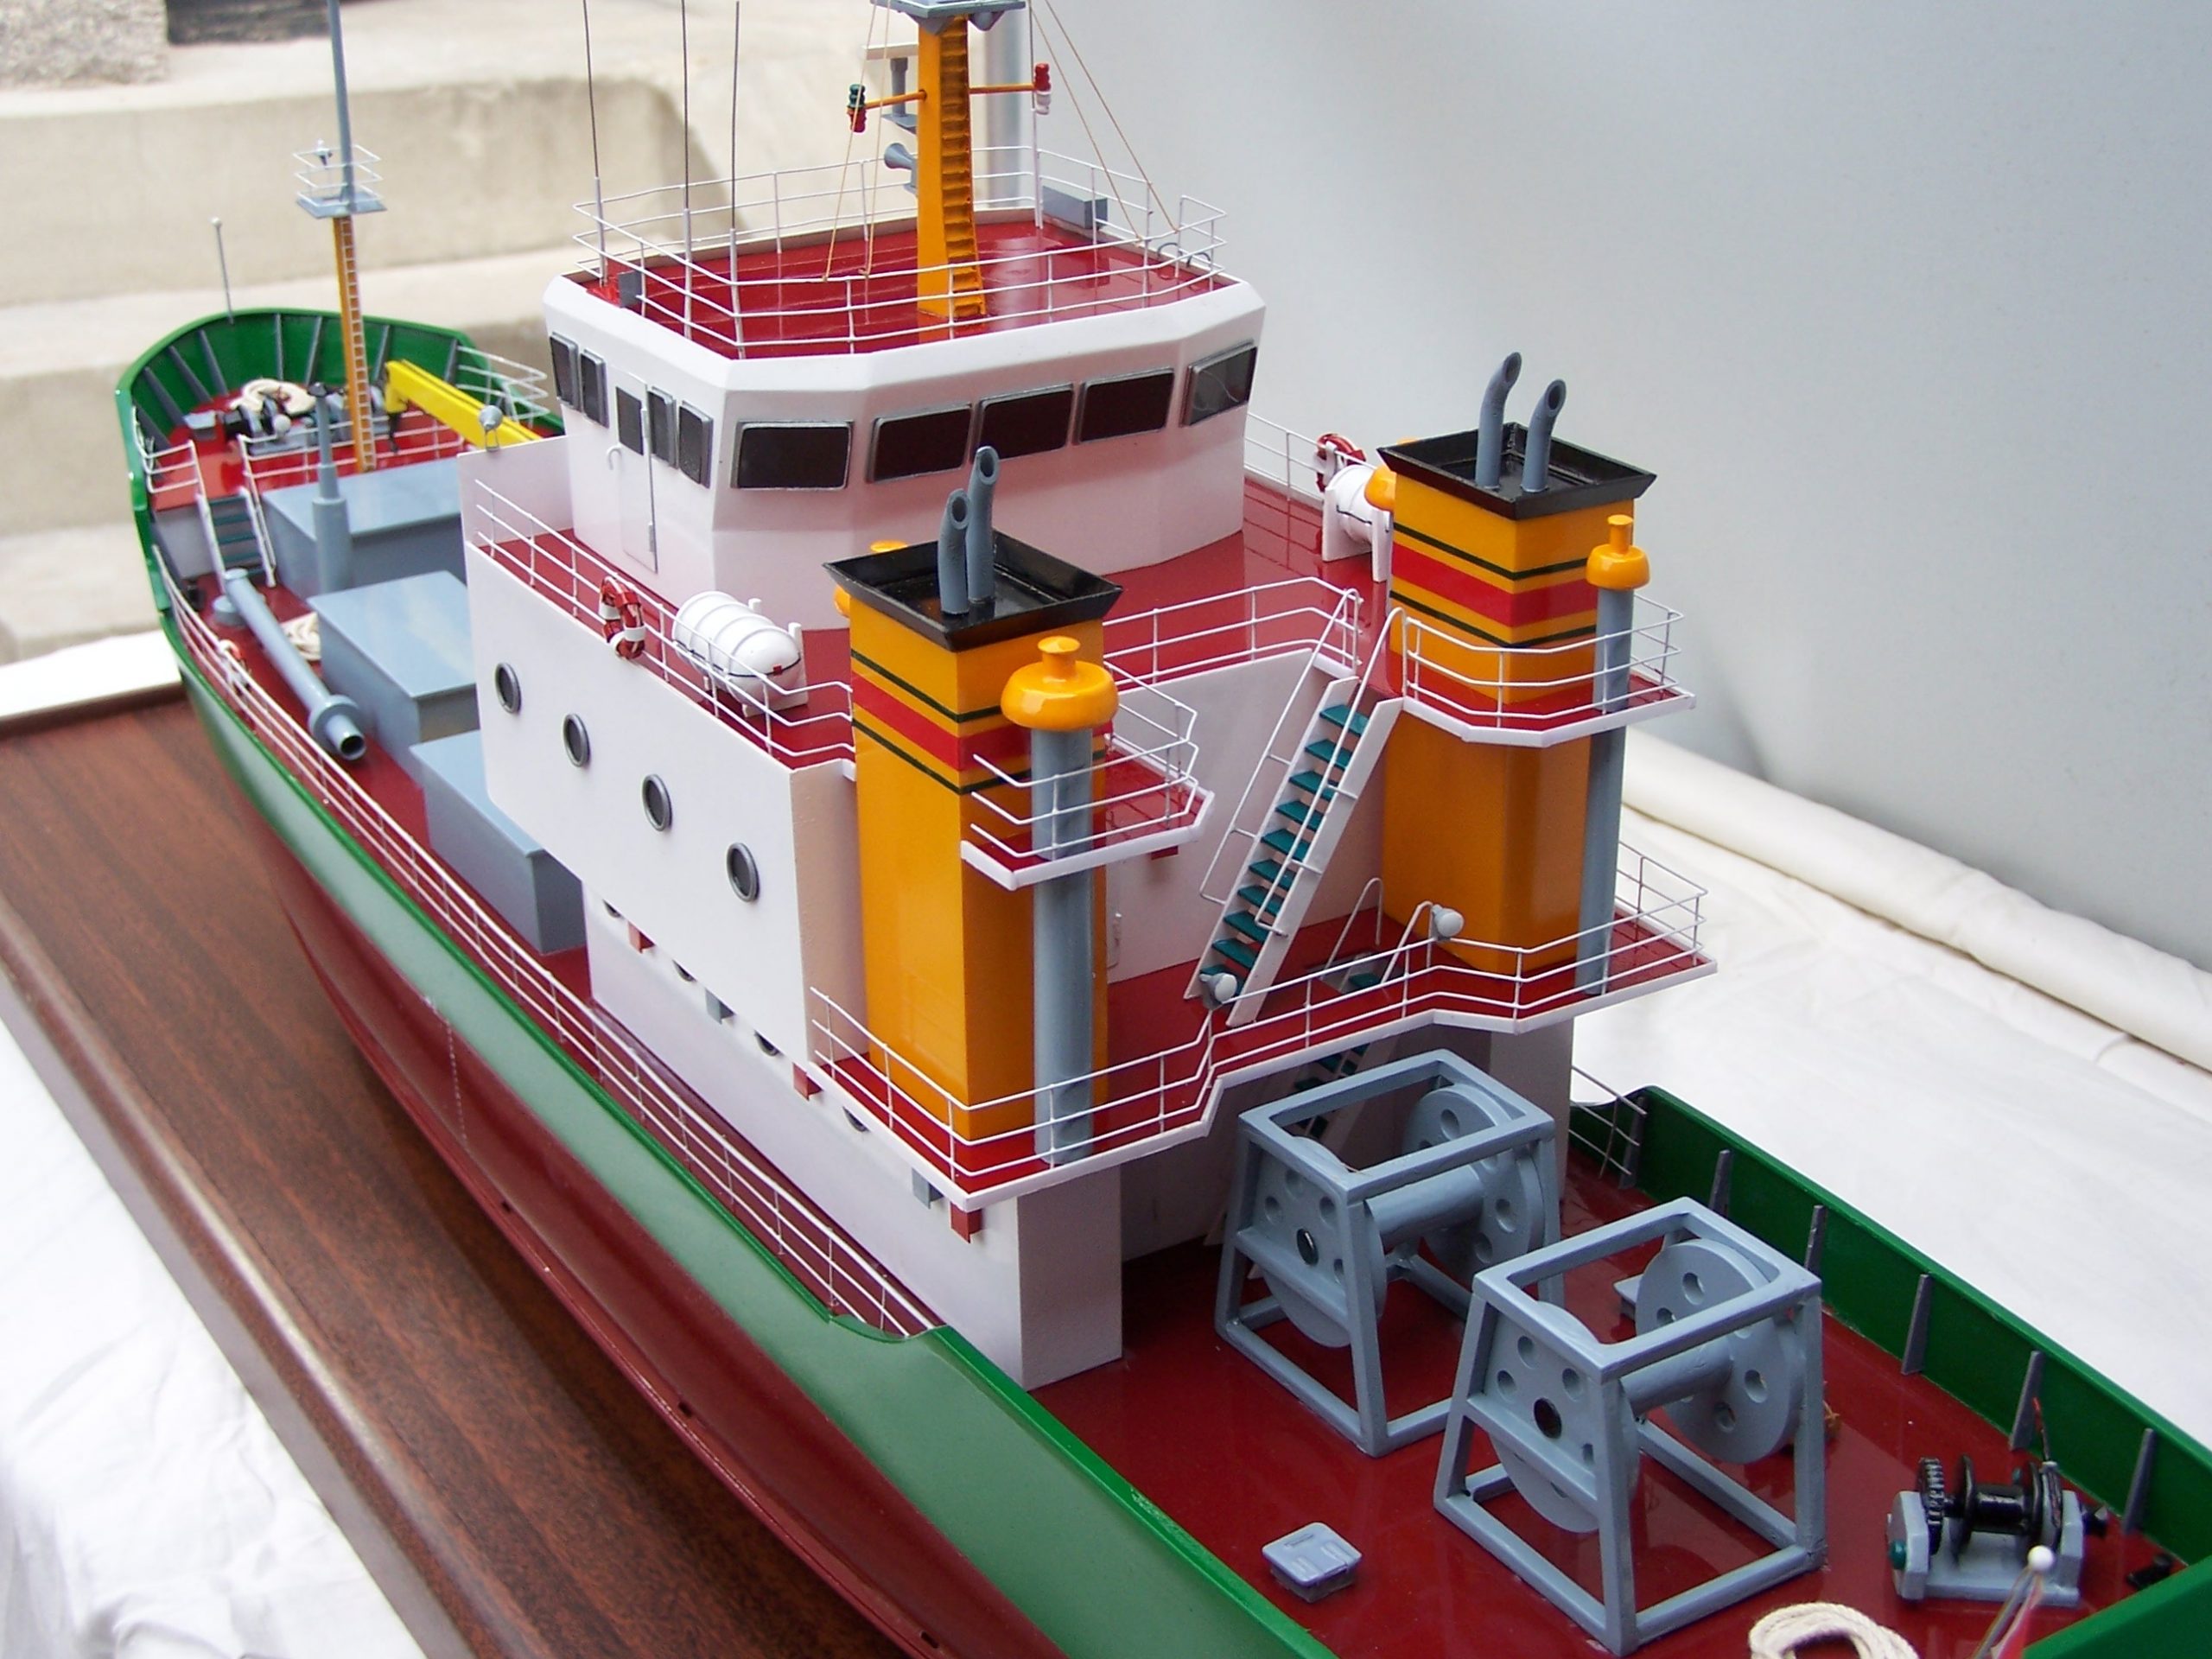 Модель инженерного судна - Изготовление моделей в Майском цветке